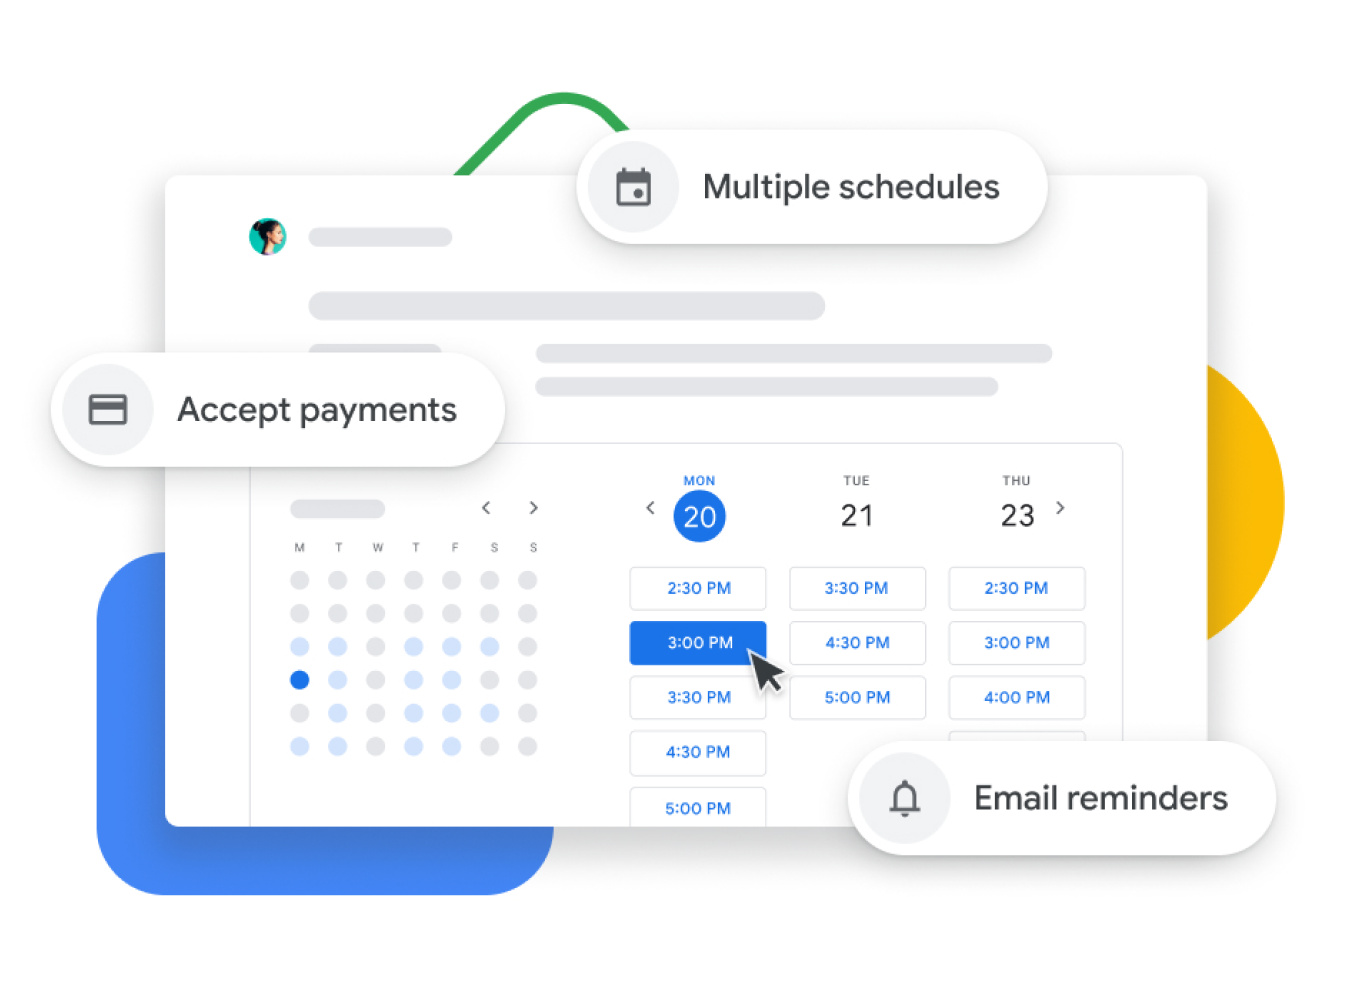 Vizuális ábrázolás a Google Naptár időpont-egyeztetési funkciójáról, amely lehetővé teszi a felhasználók számára a befizetések kezelését, a visszajelzést az ügyfeleknek és emlékeztető e-mailek küldését.